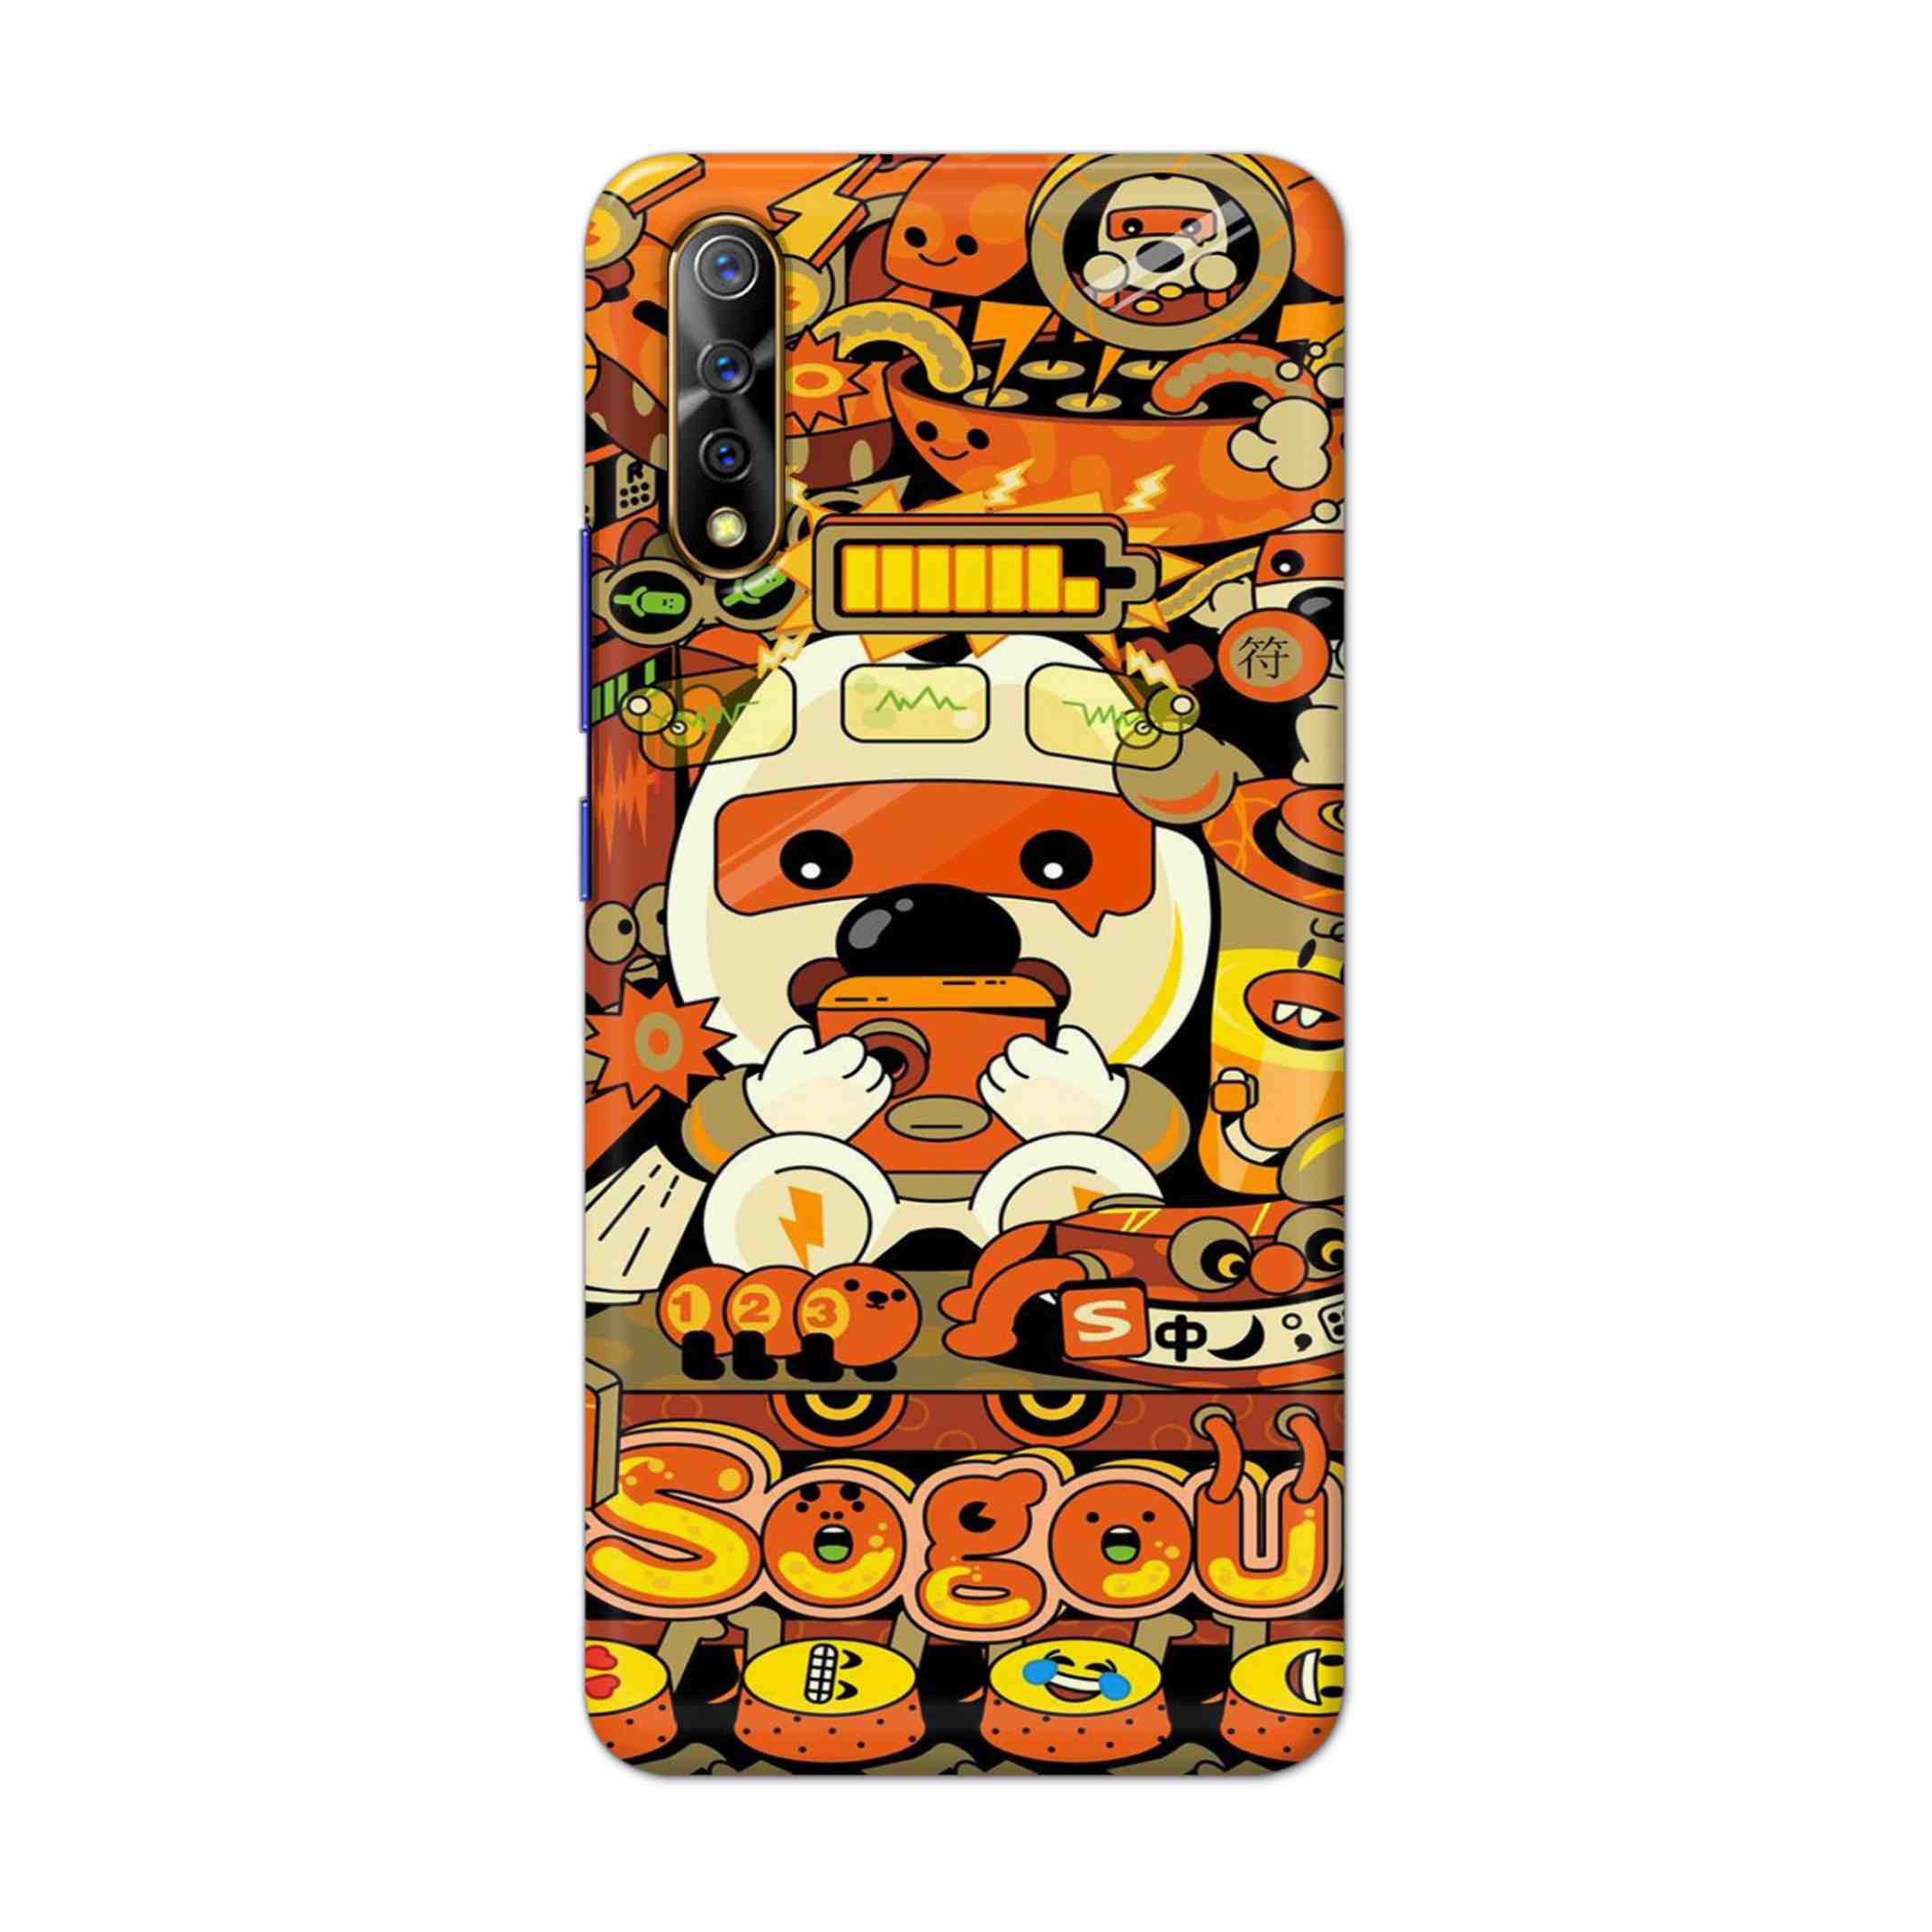 Buy Sogou Hard Back Mobile Phone Case Cover For Vivo S1 / Z1x Online